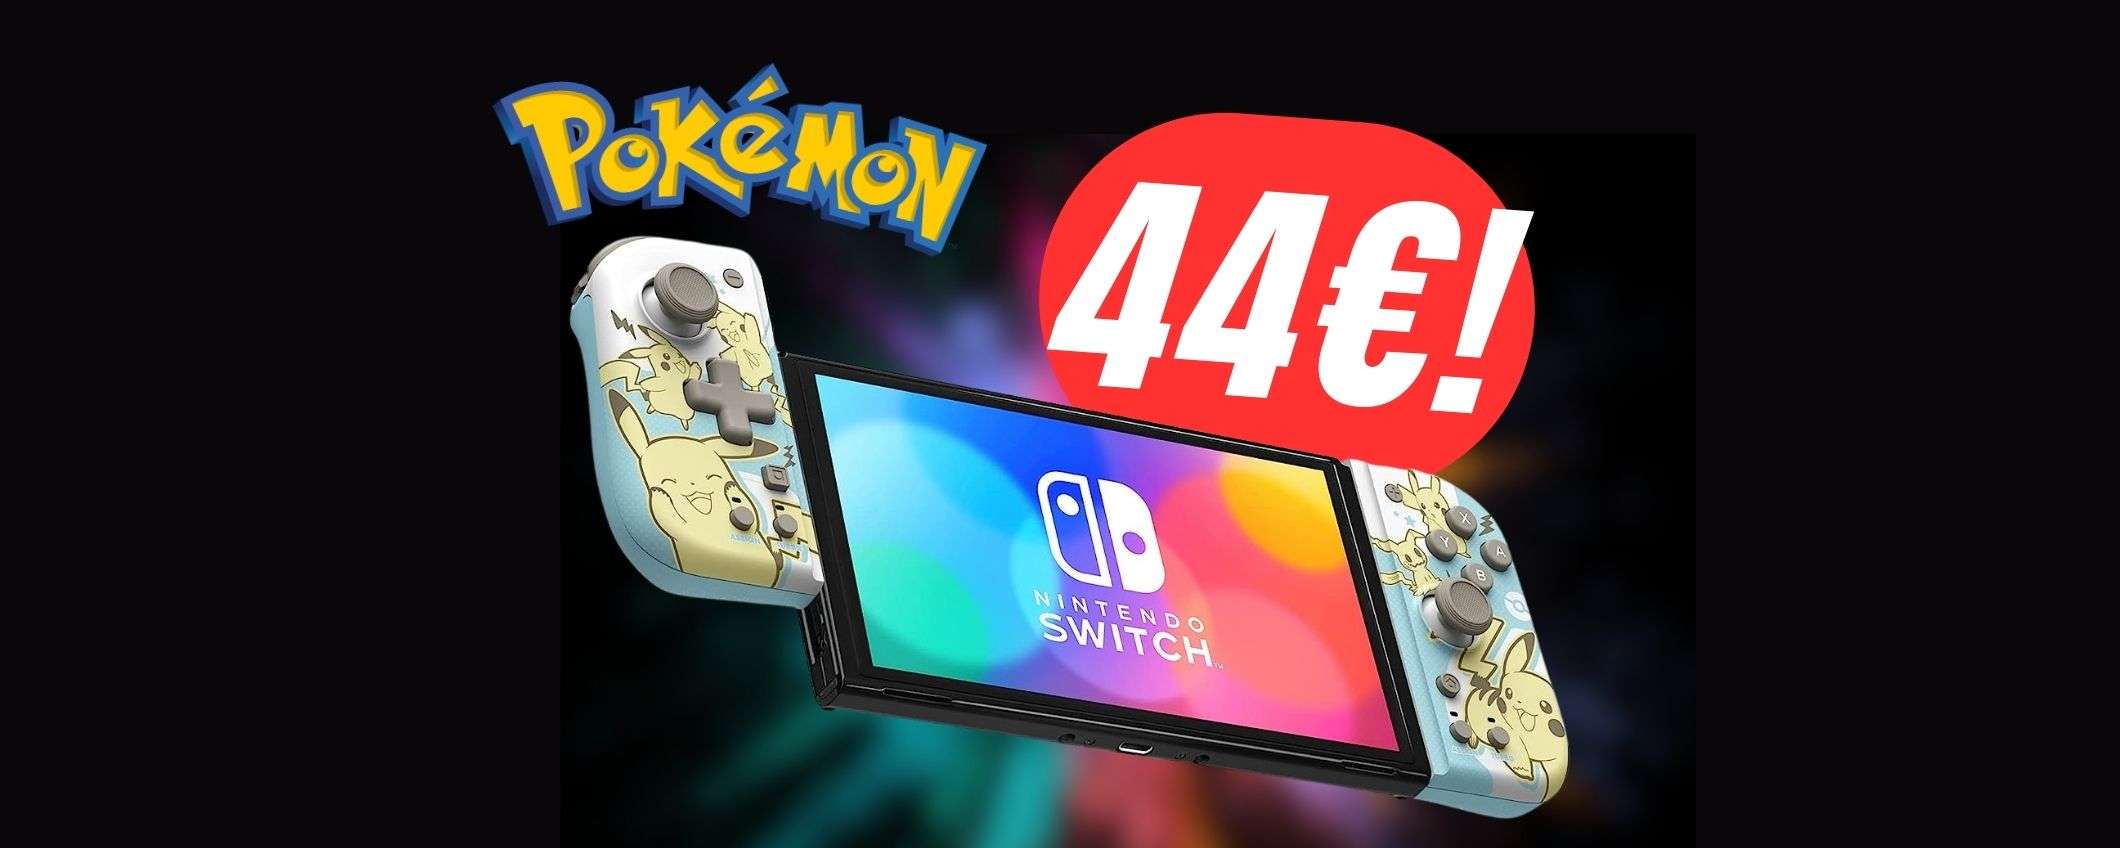 Meglio dei Joy-Con ma a 44€: i controller ufficiali Pokémon per Nintendo Switch sono in SCONTO!